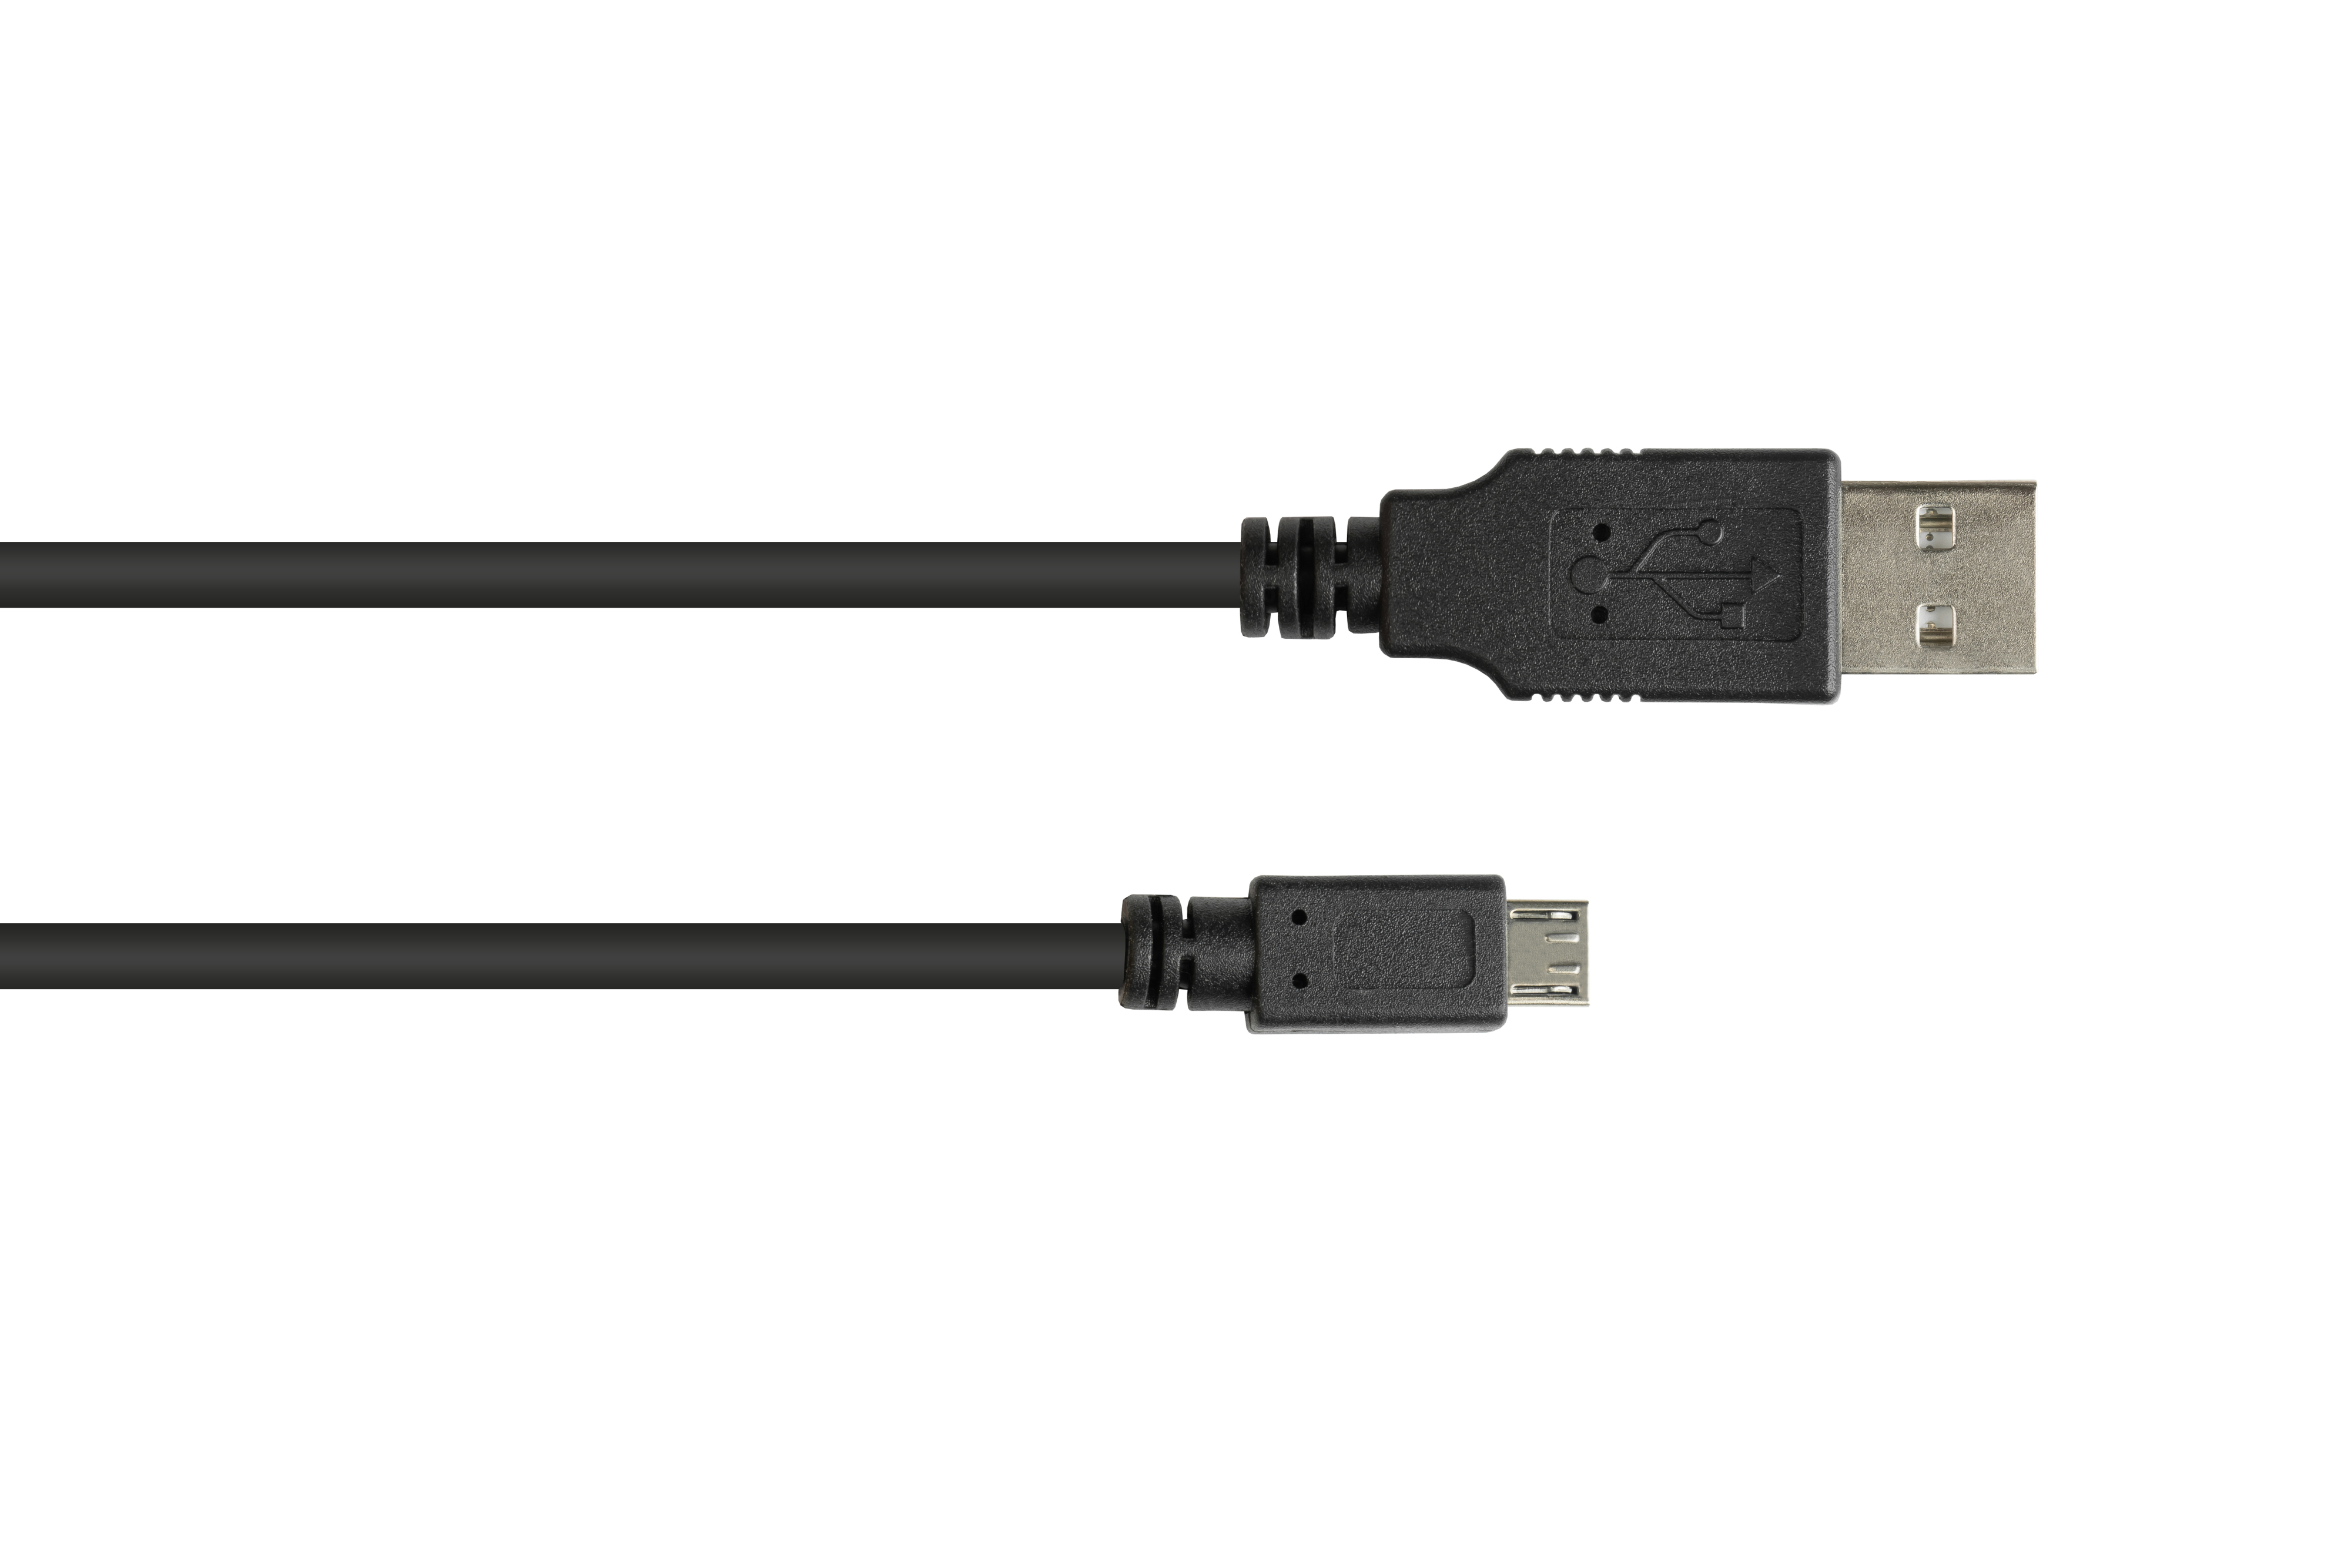 2.0 CONNECTIONS B, USB EASY Stecker schwarz Micro Anschlusskabel Stecker GOOD A an